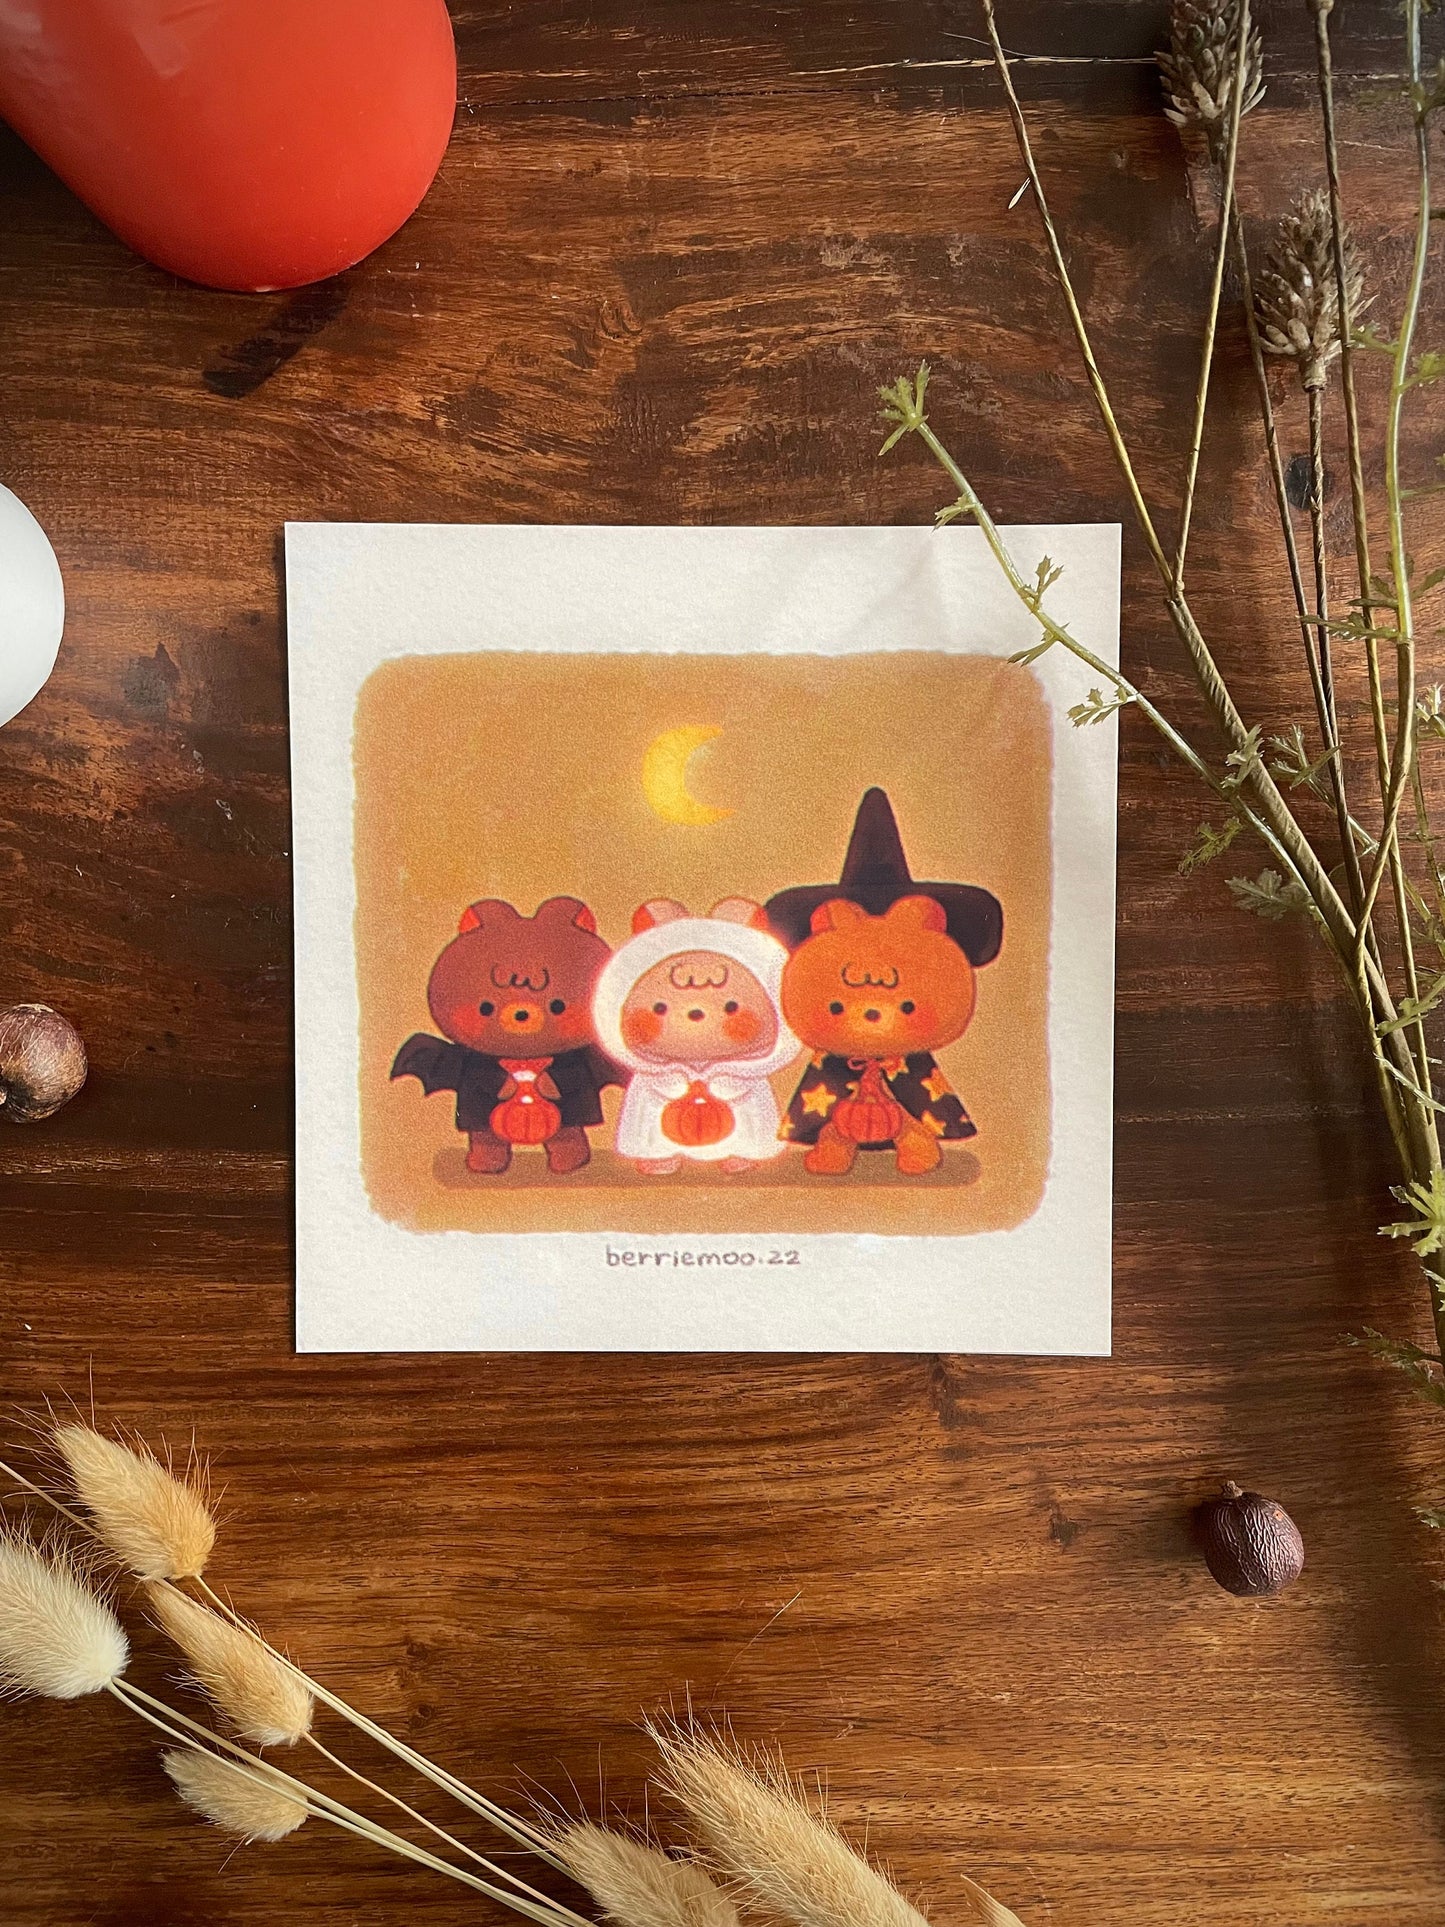 Halloween Friends - Print